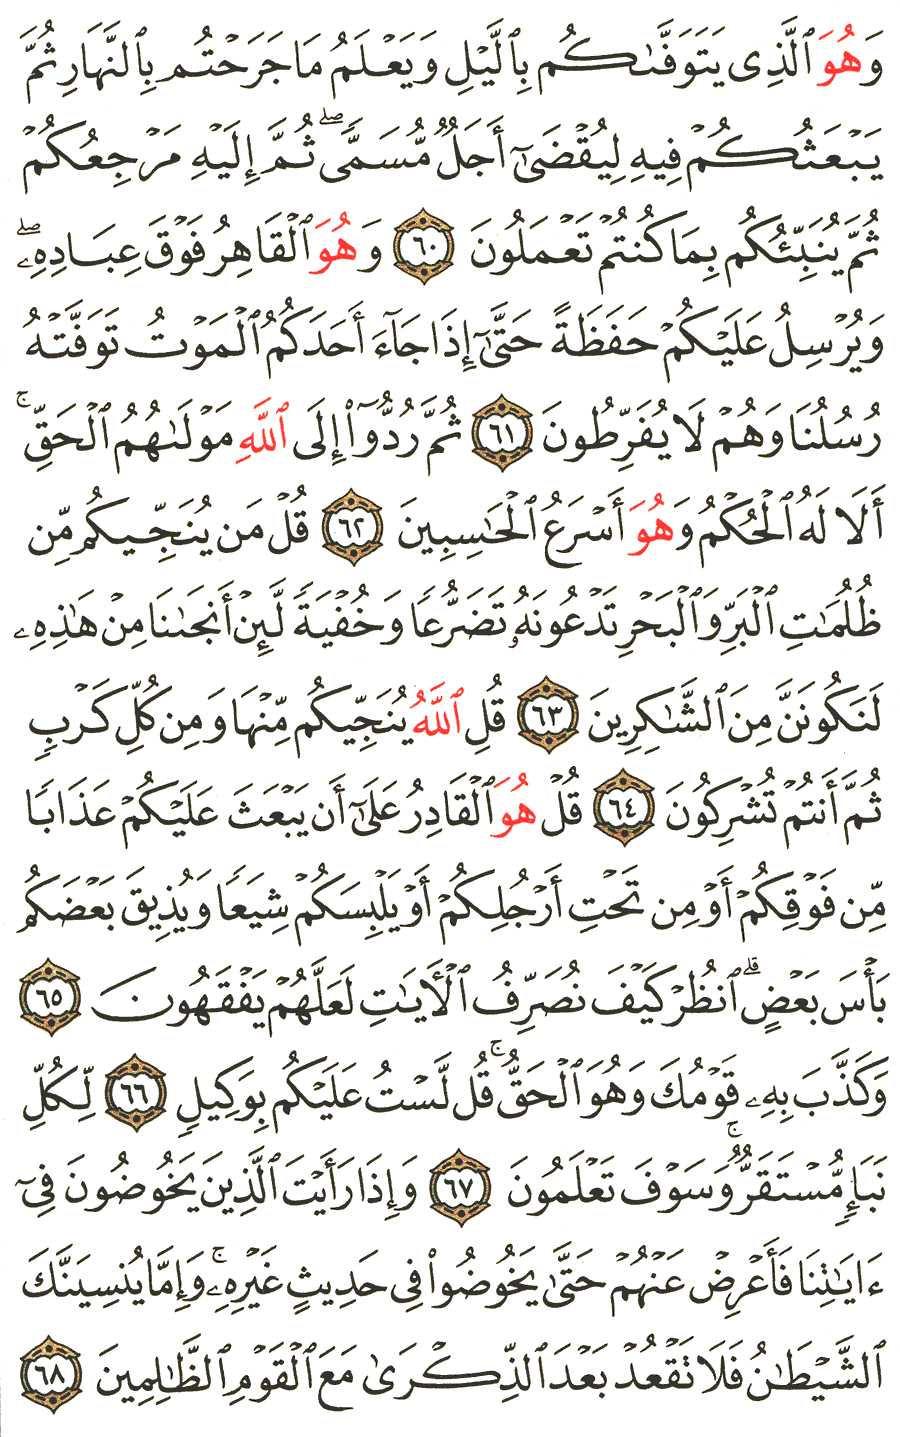 الصفحة 135 من القرآن الكريم